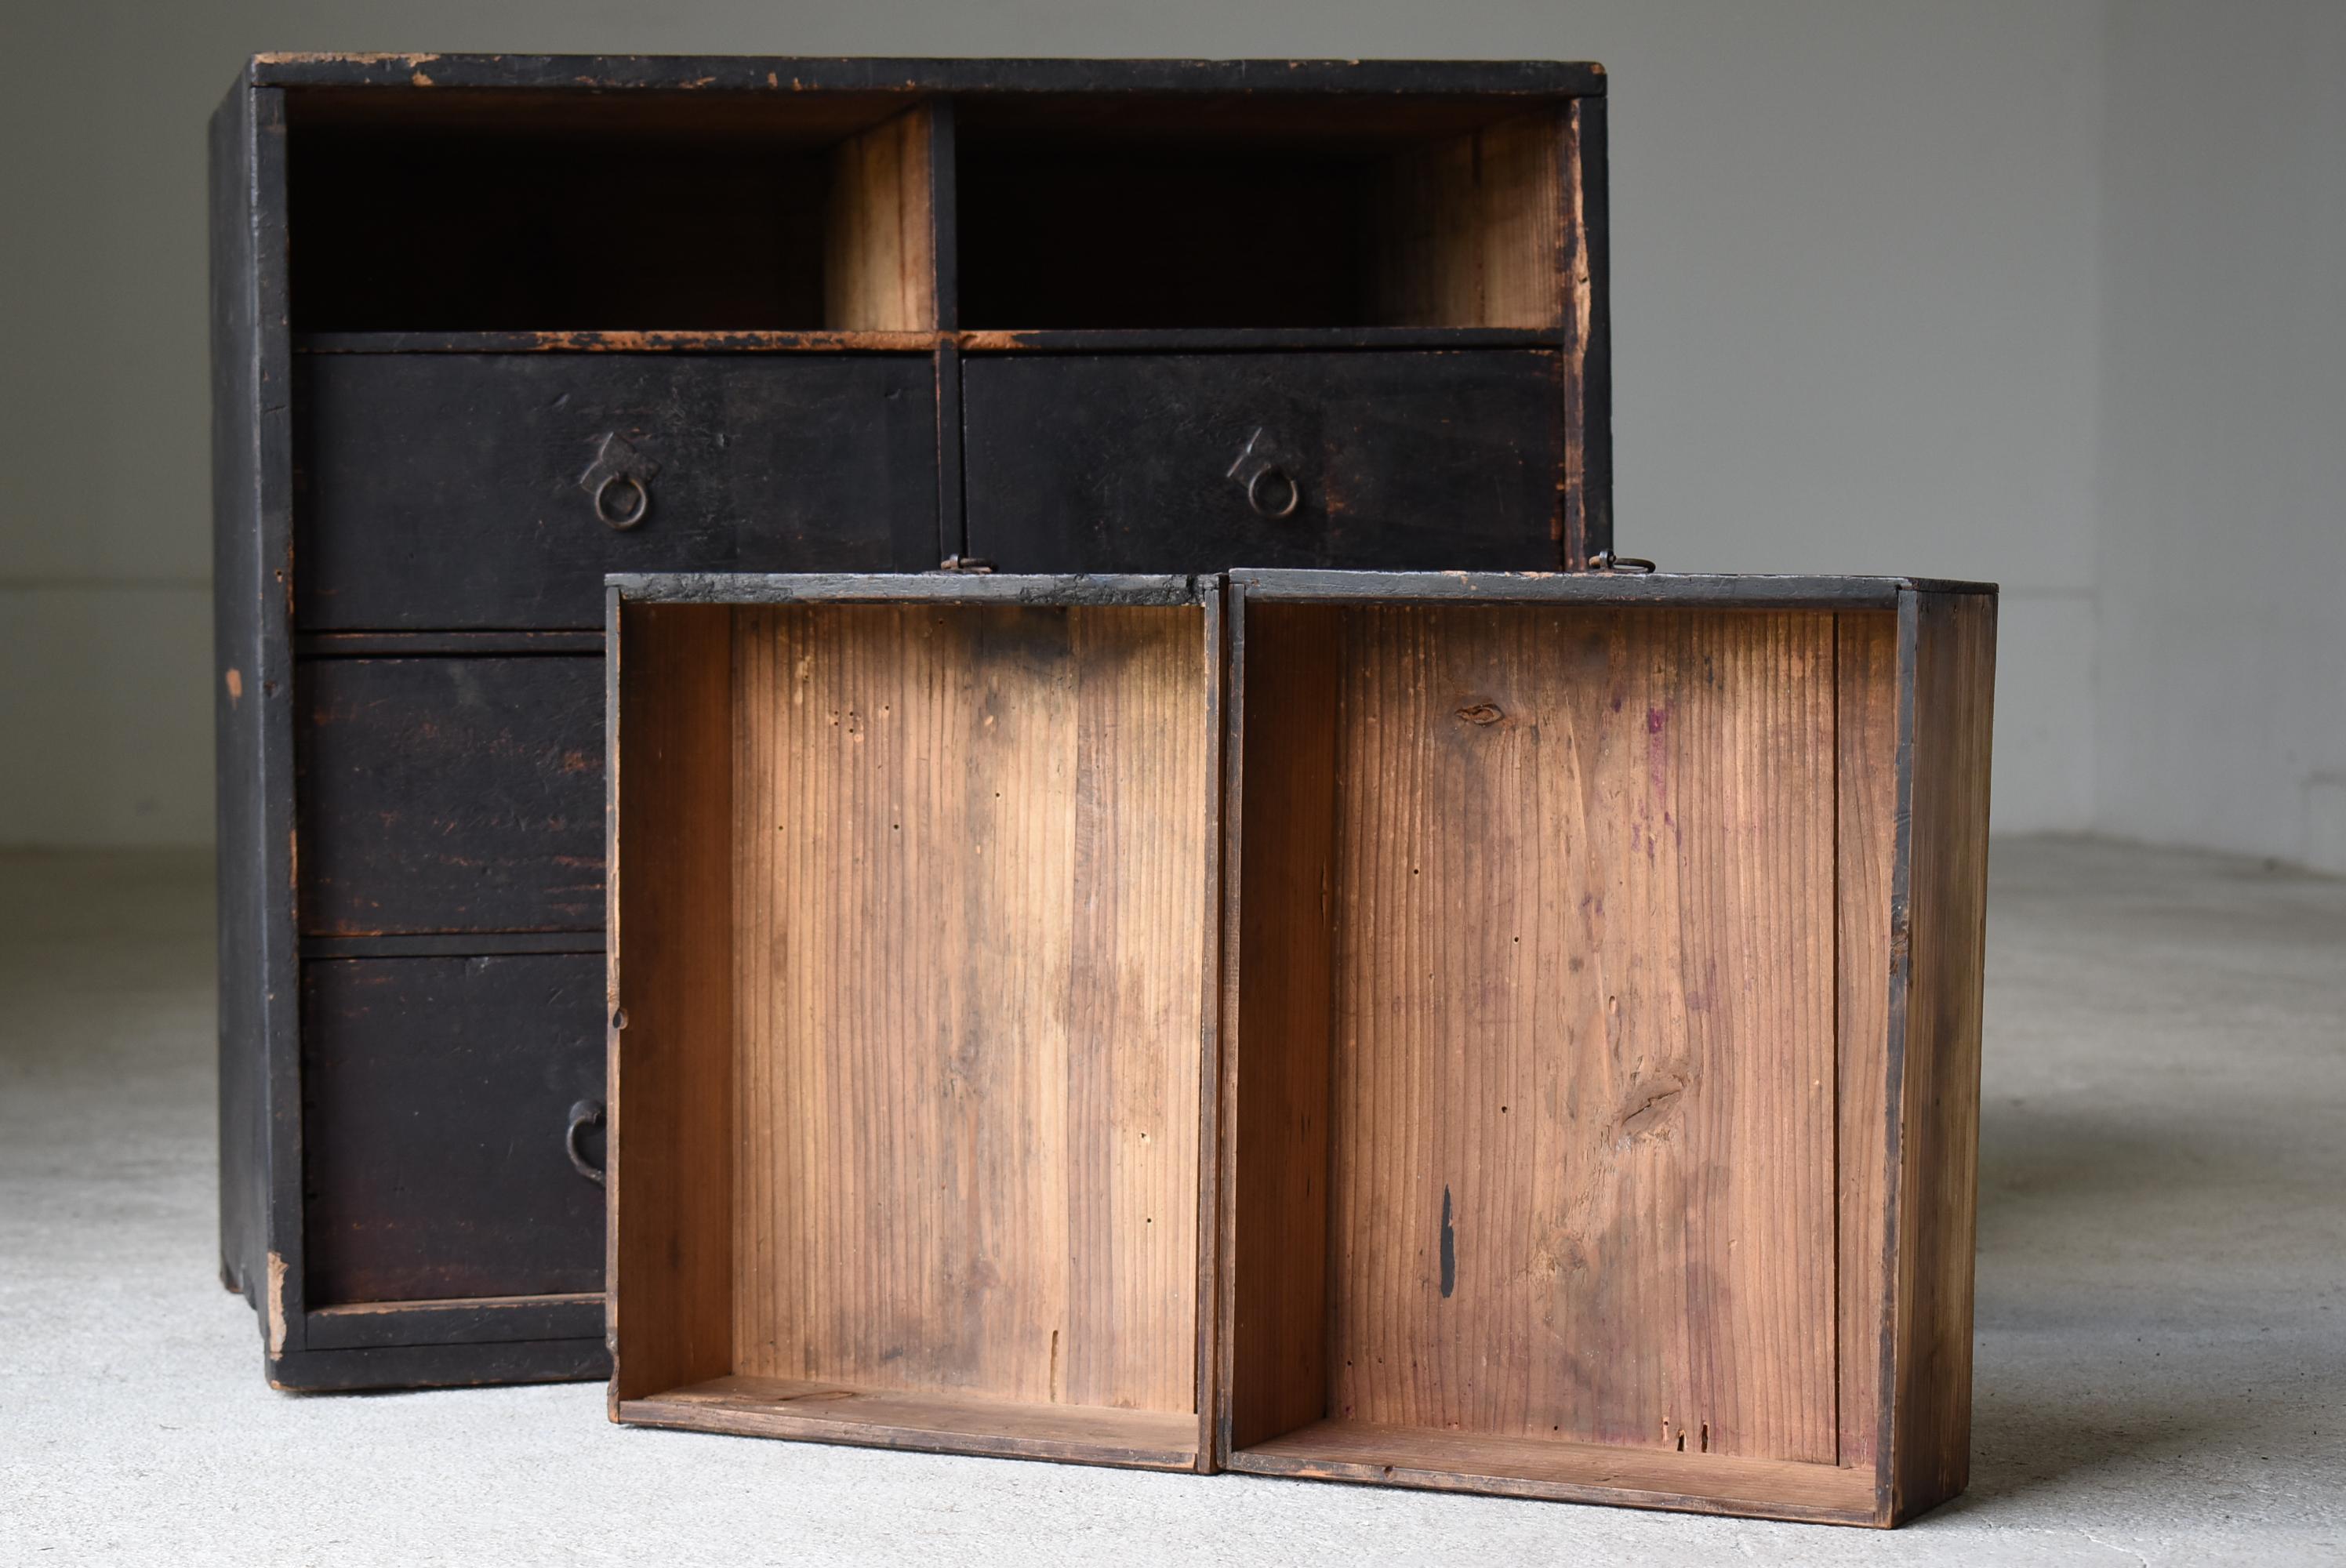 Japanese Antique Black Drawer 1860s-1900s / Tansu Storage Cabinet Wabi Sabi 6